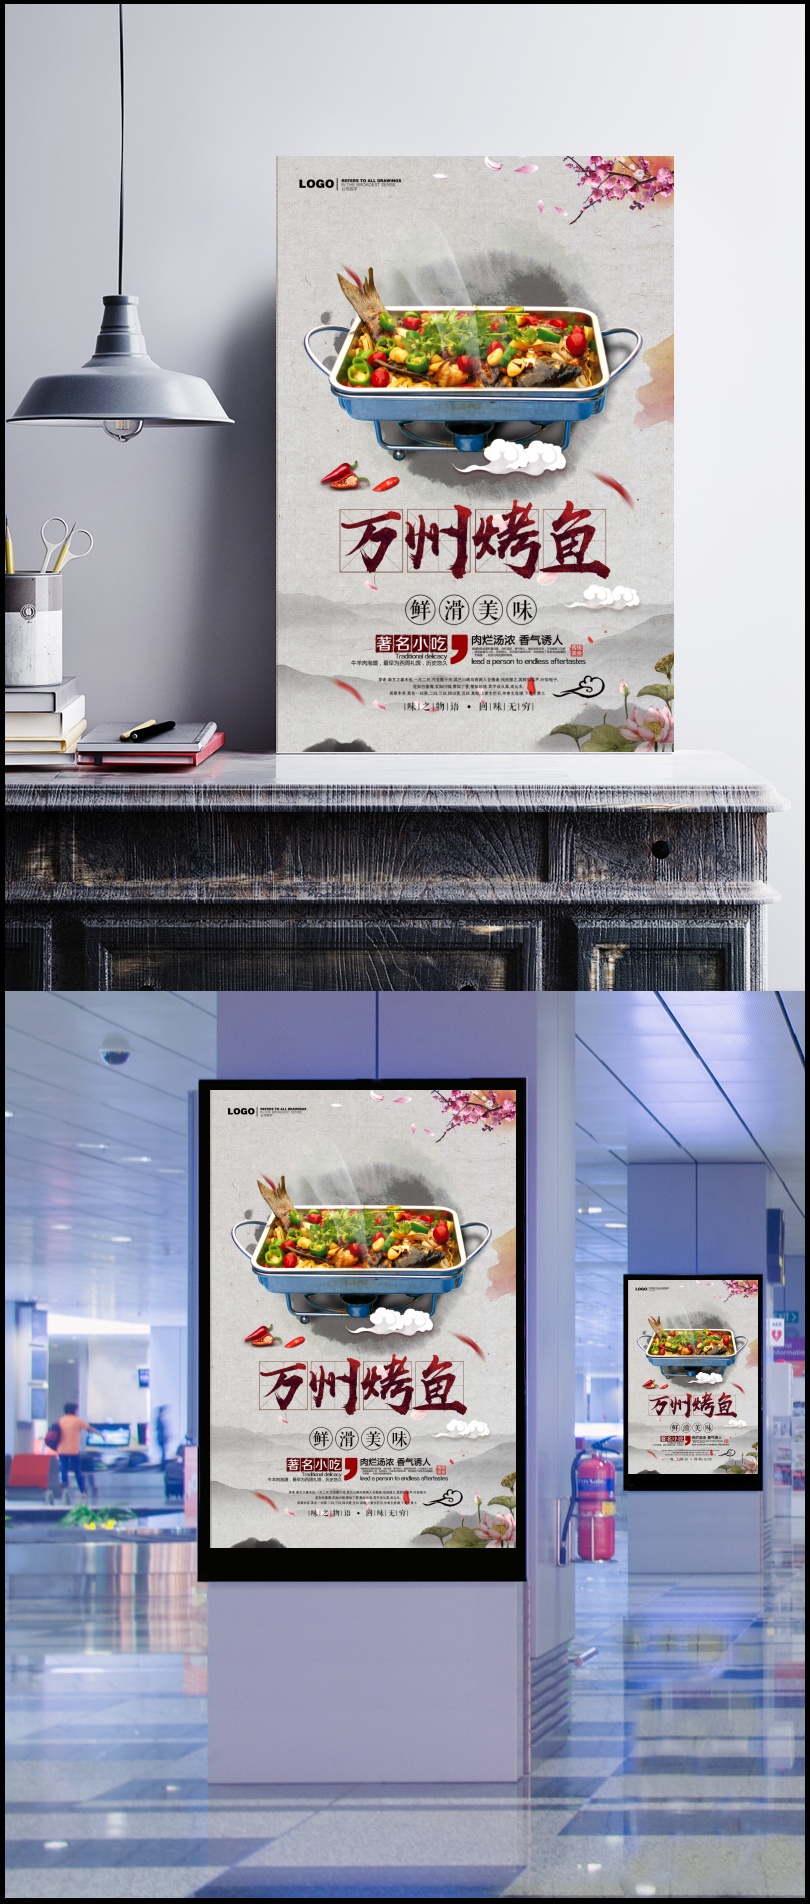 水墨中国风万州烤鱼海报背景素材